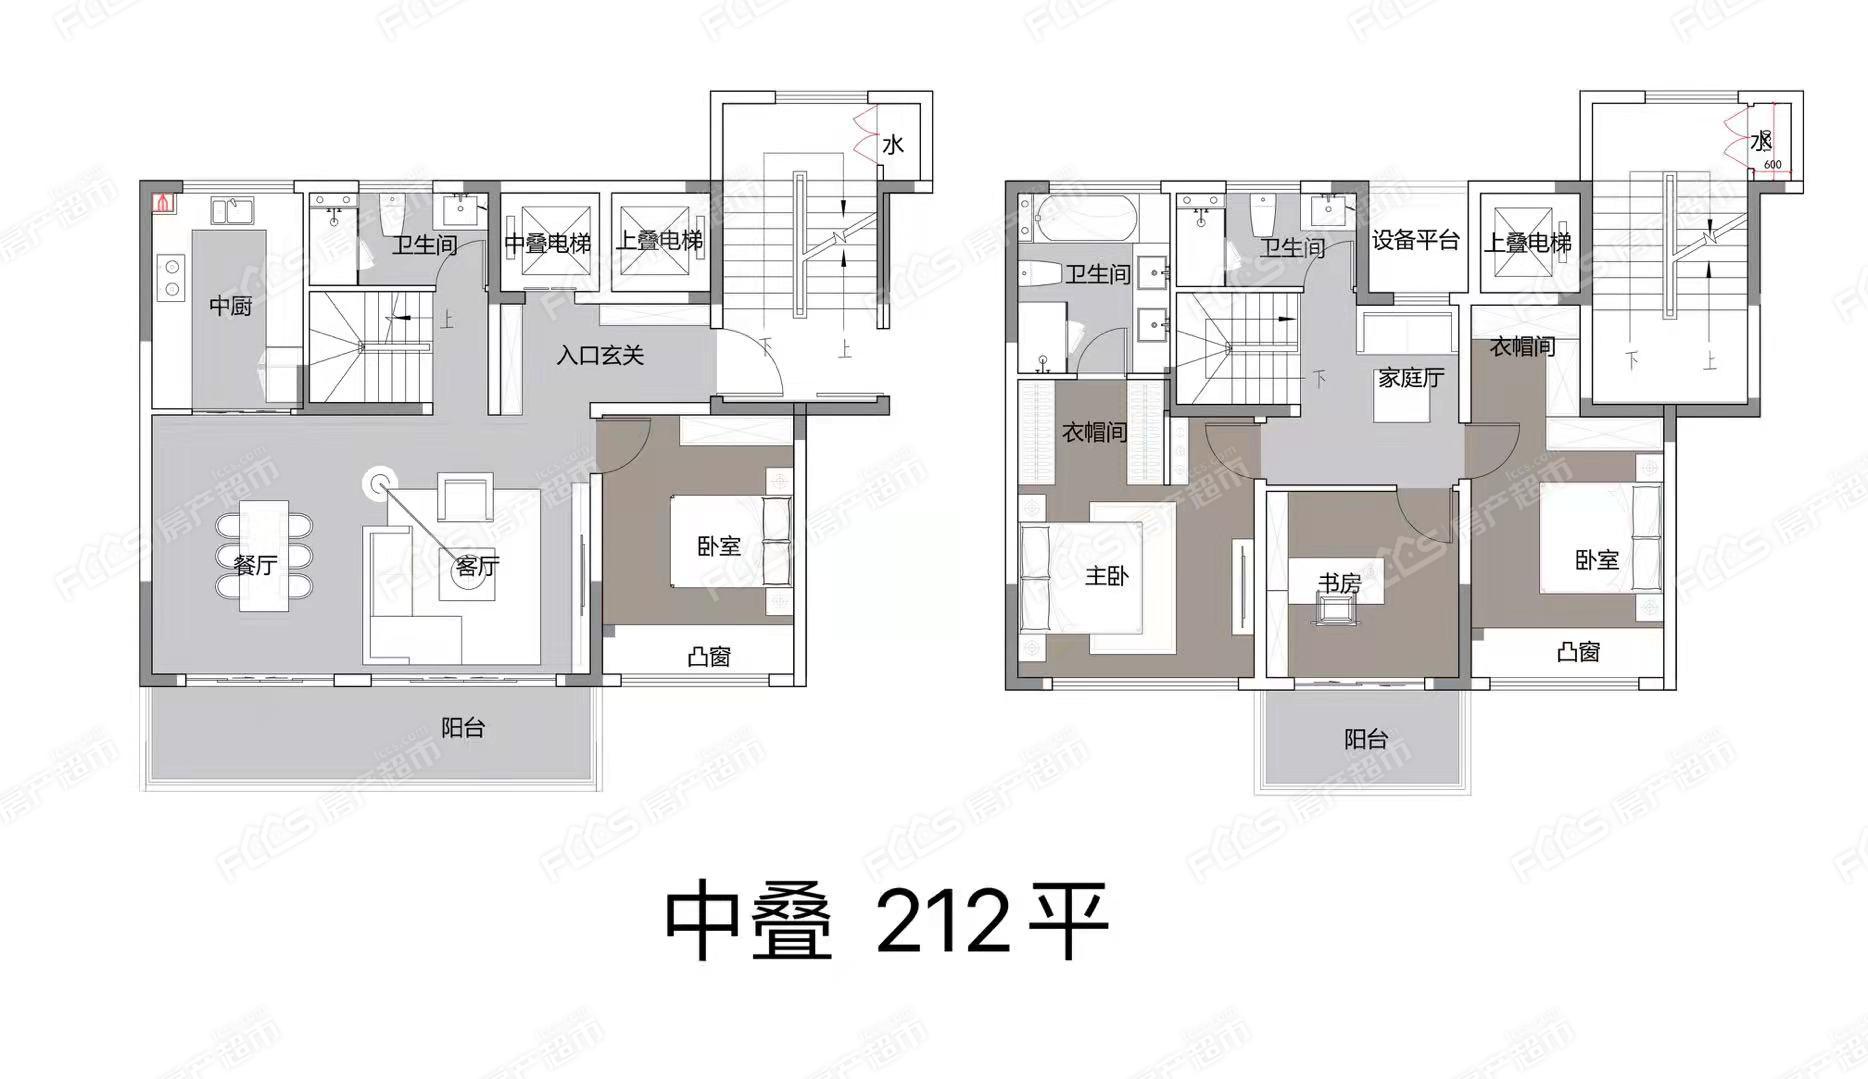 4室2厅3卫2阳台